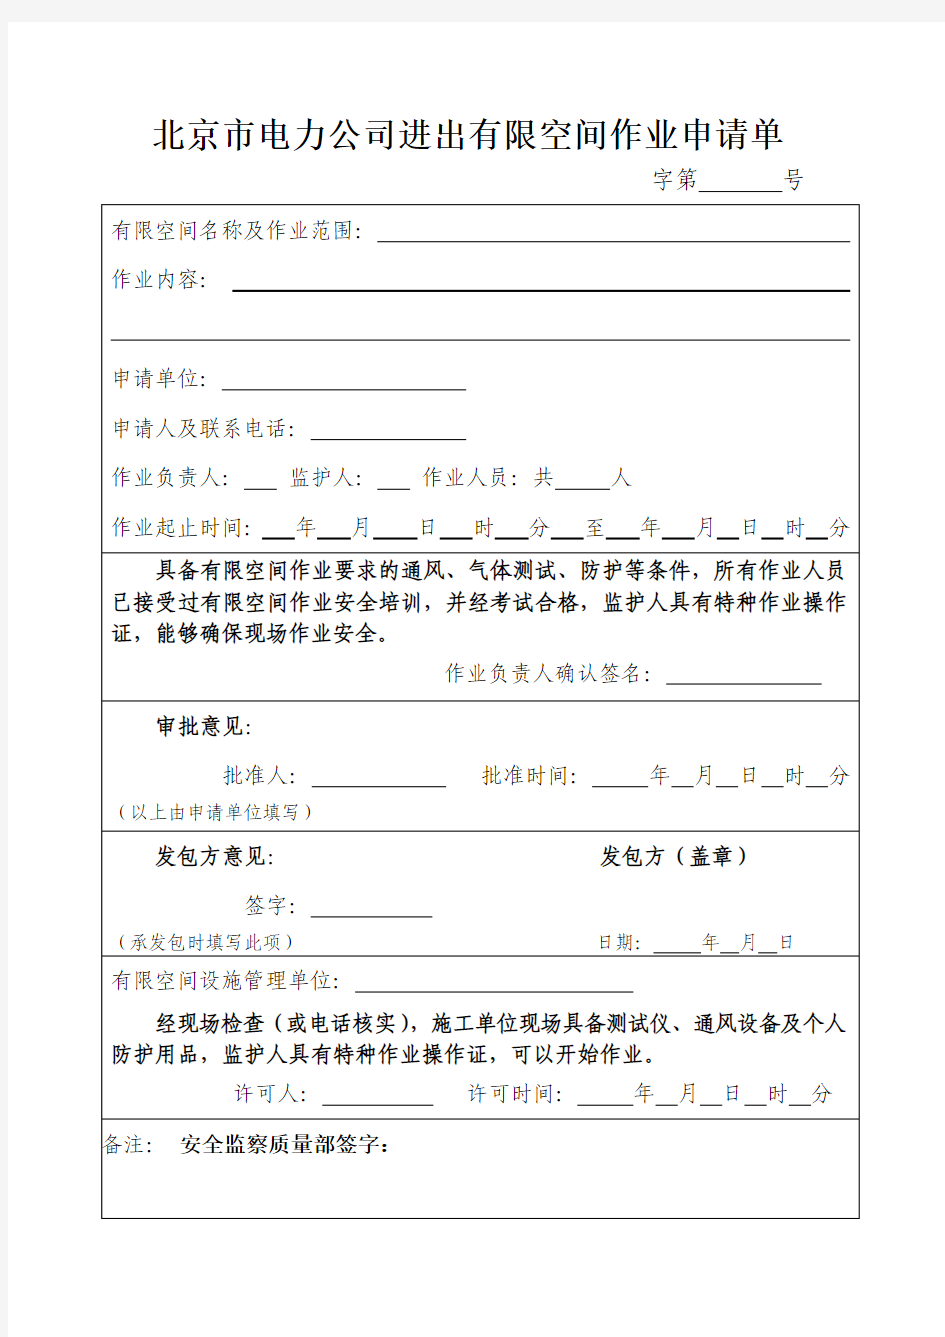 北京市电力公司进出有限空间作业申请单